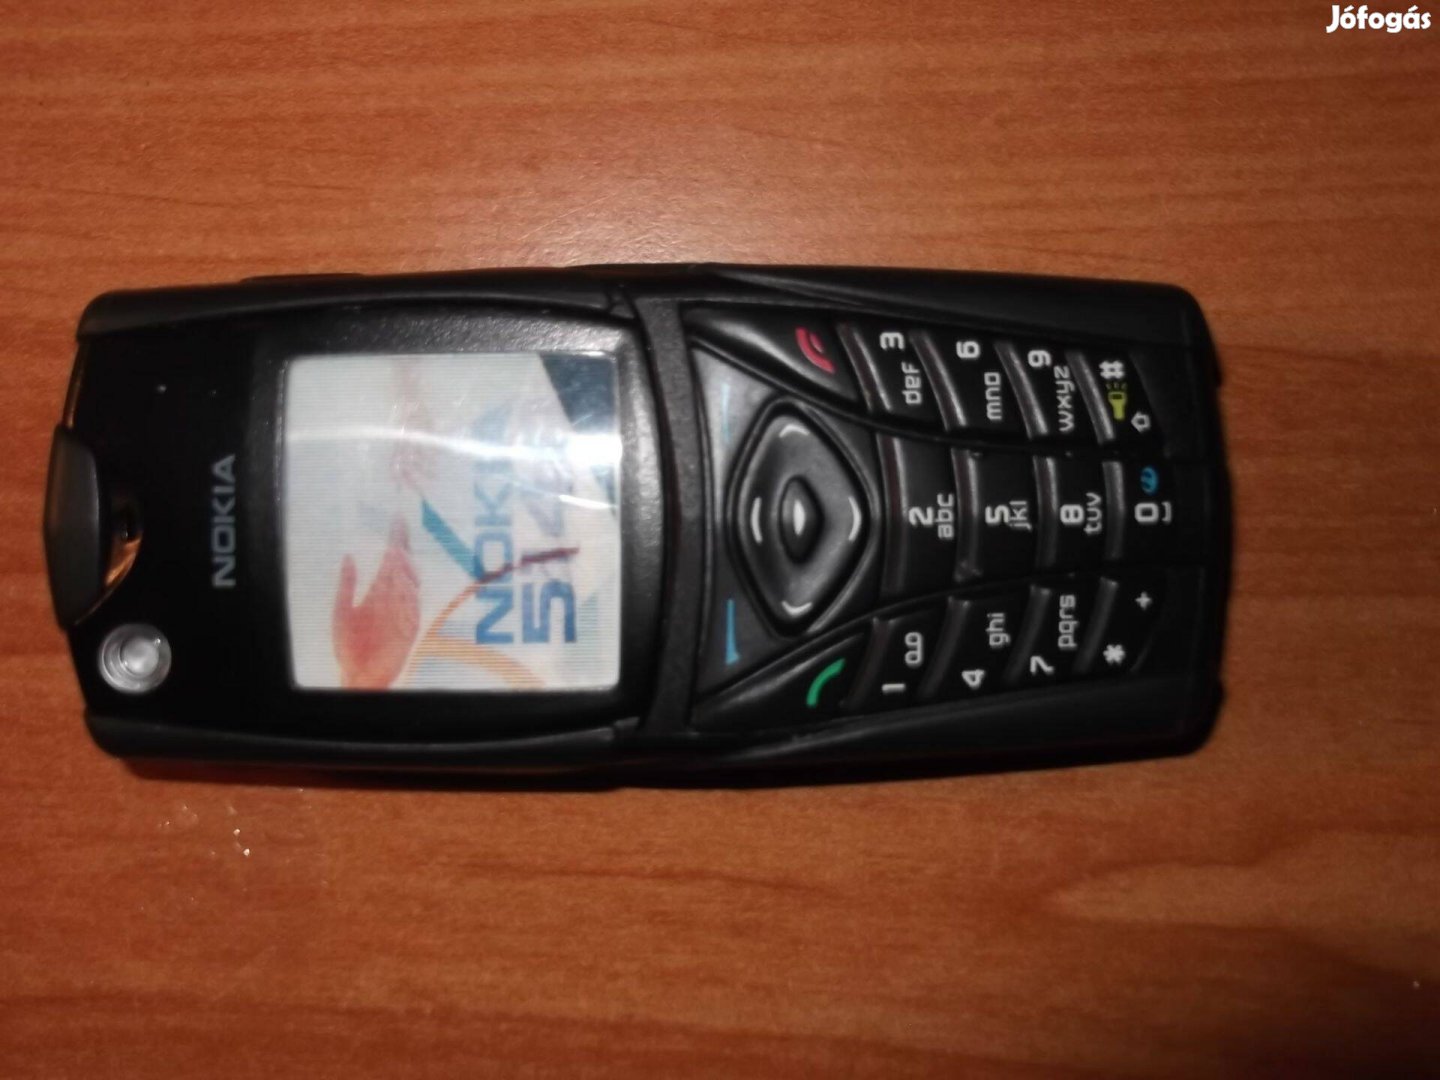 Eladó 3 darab új Nokia bemutató telefon ( Dummynak is nevezik )